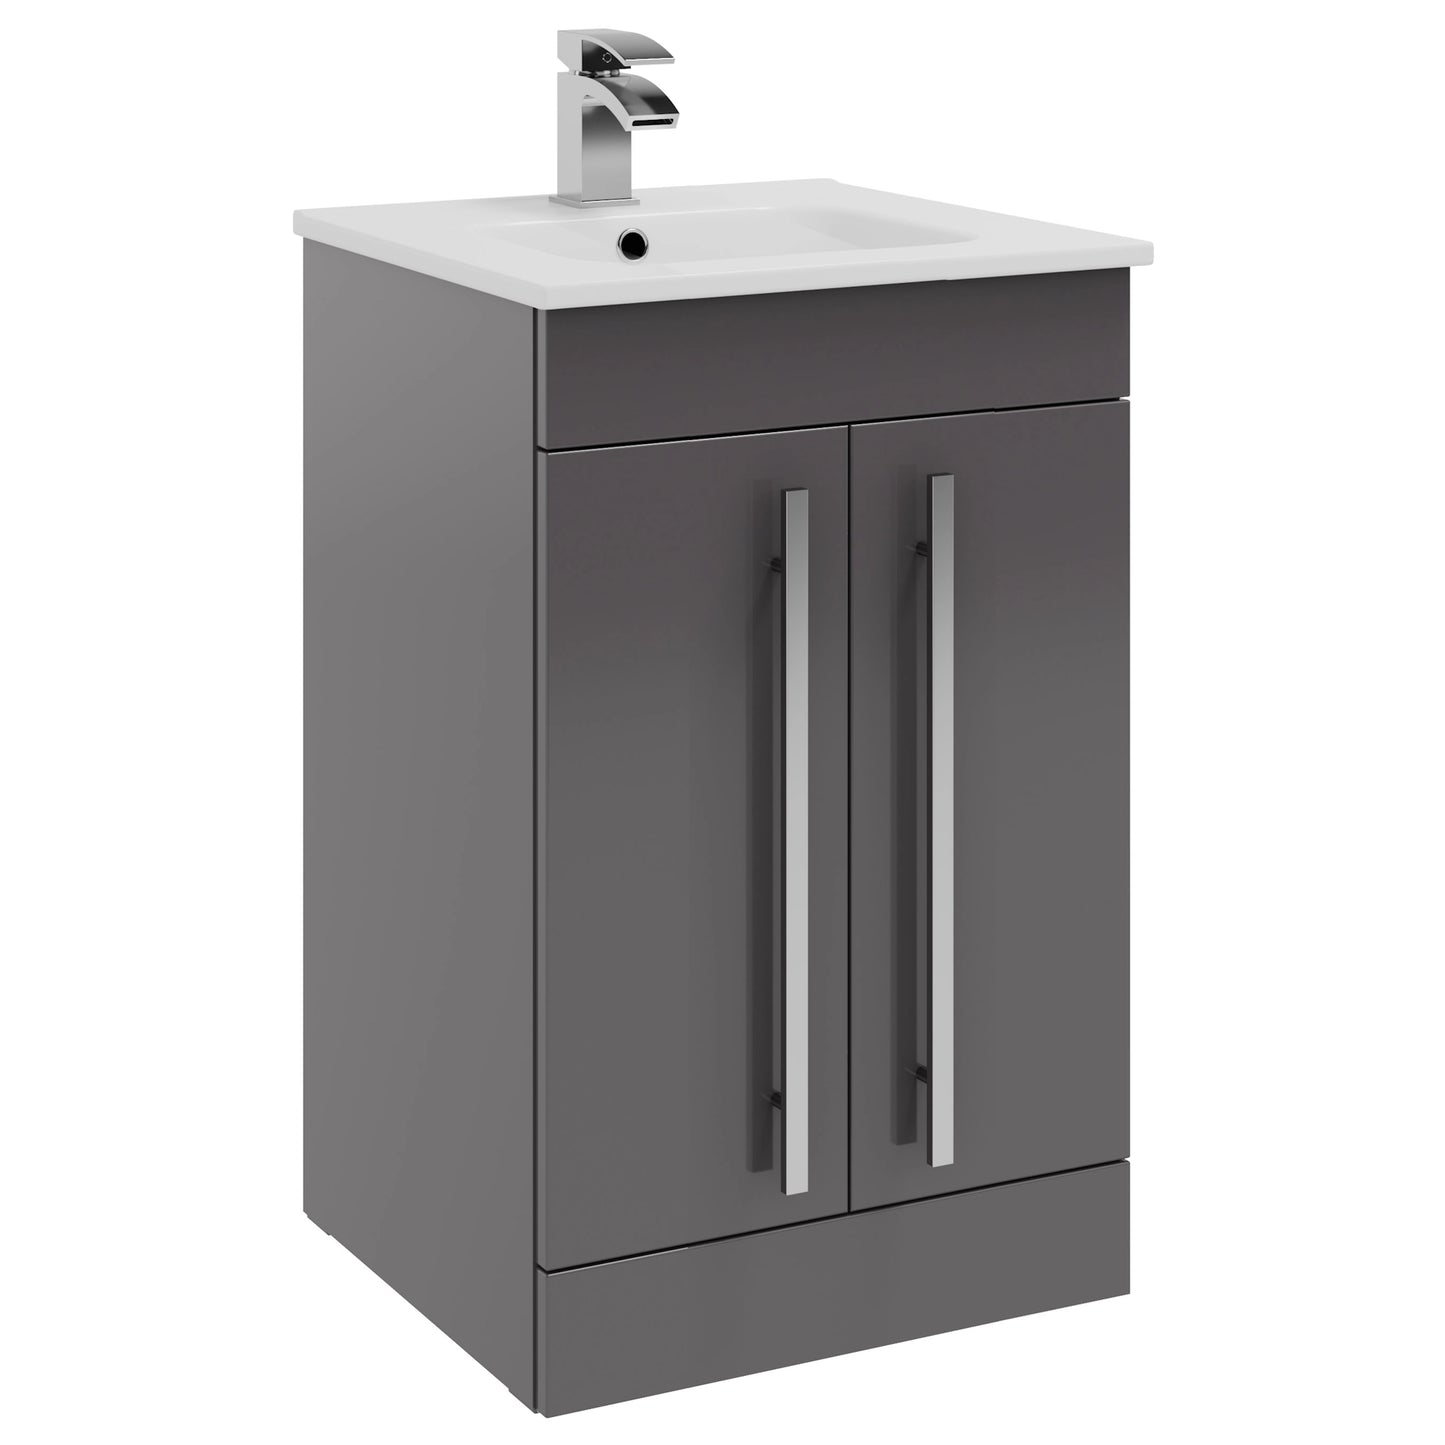 Purity Kartell Floor Standing Two Door 500mm Basin Sink Vanity Unit